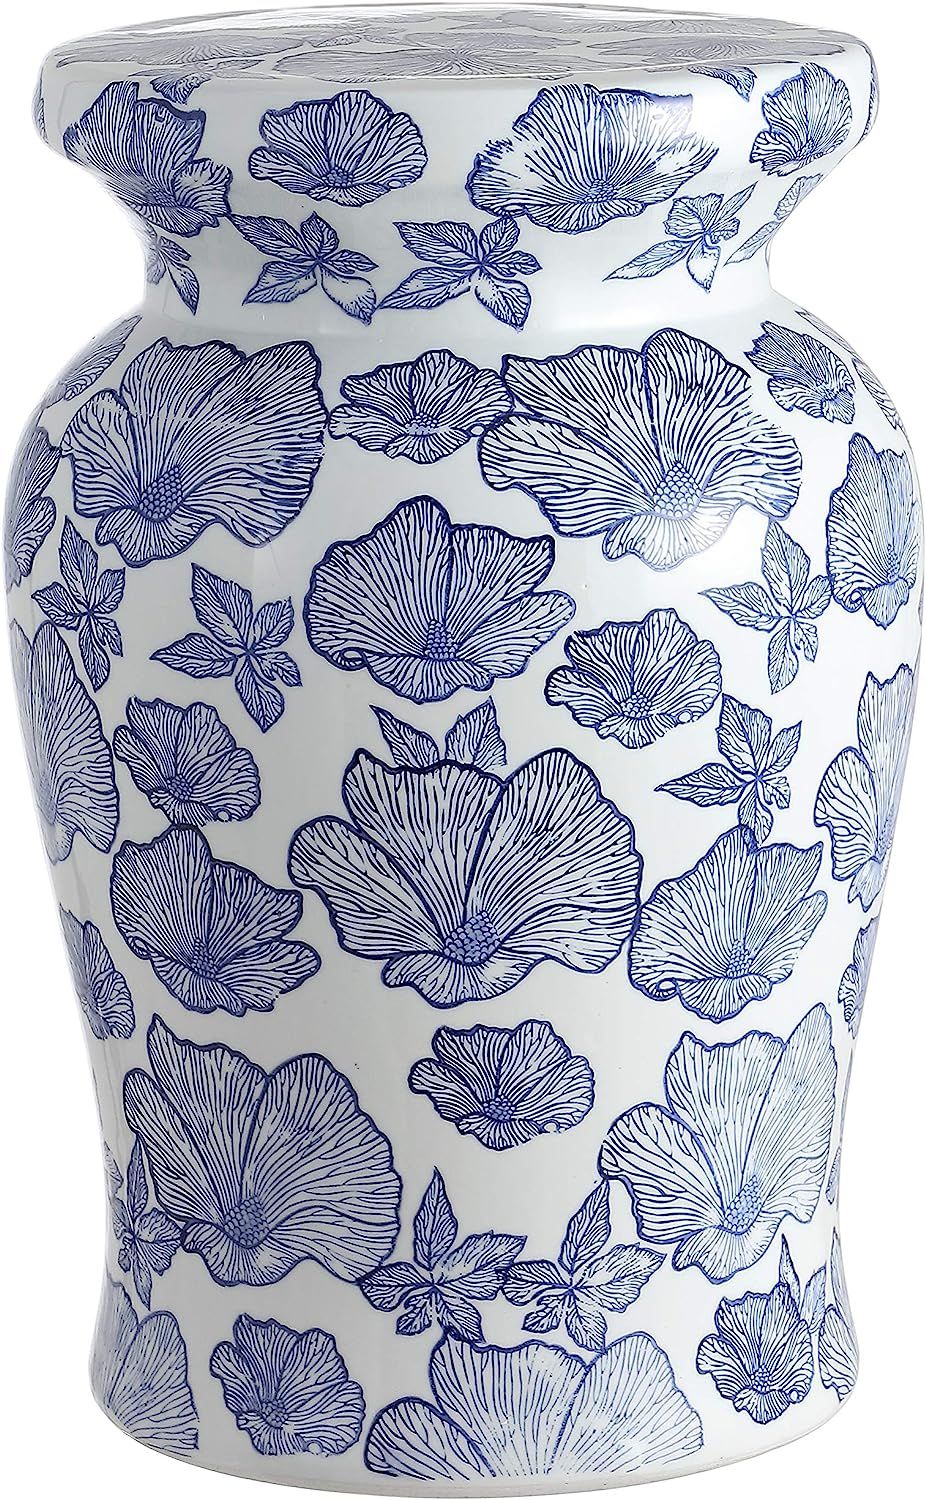 Jonathan Y TBL1018A Poppies 17.7" Ceramic Garden Stool, White/Blue | Amazon (US)